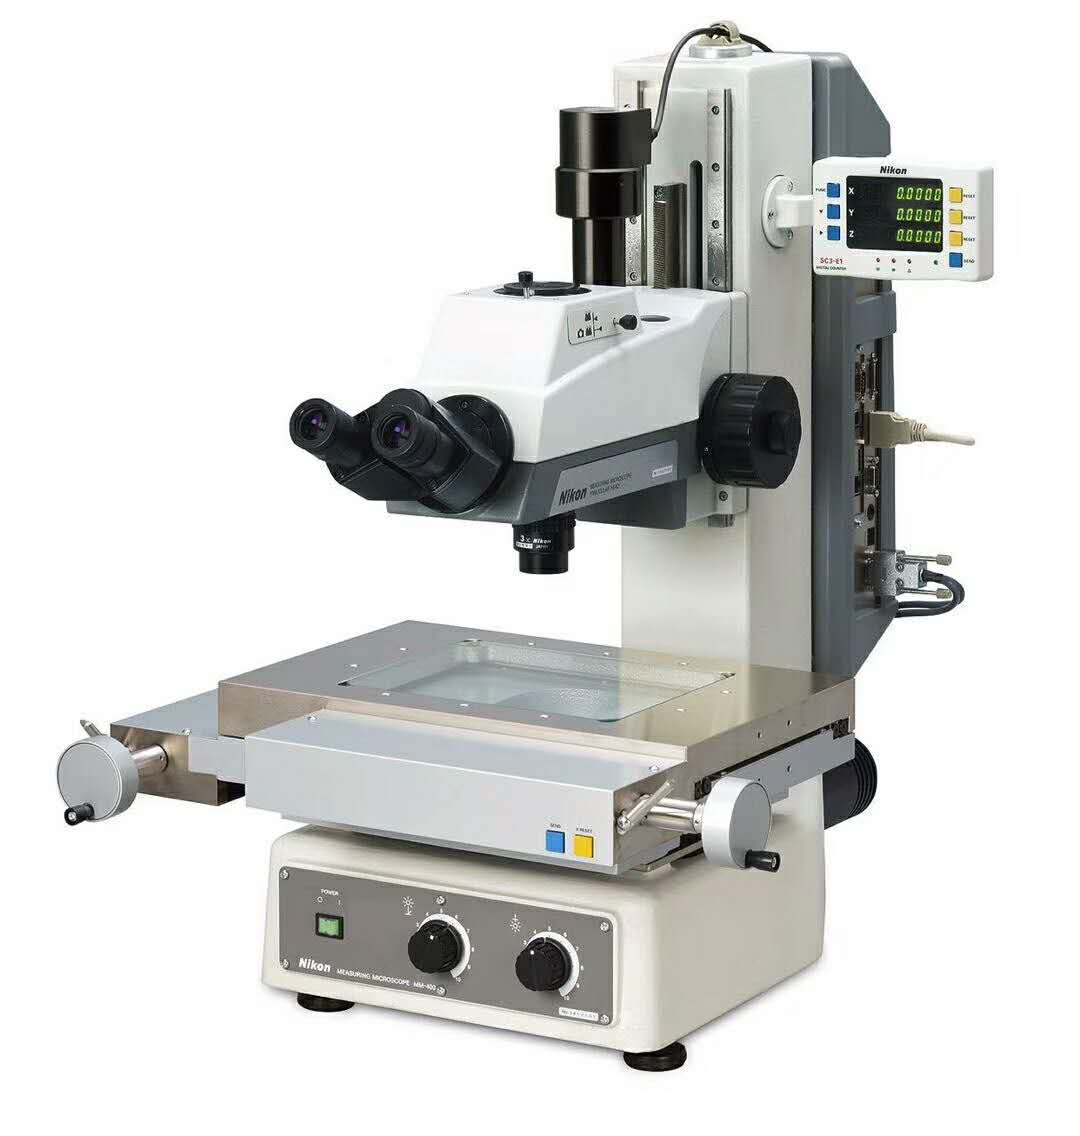 日本尼康工具显微镜 尼康显微镜图片